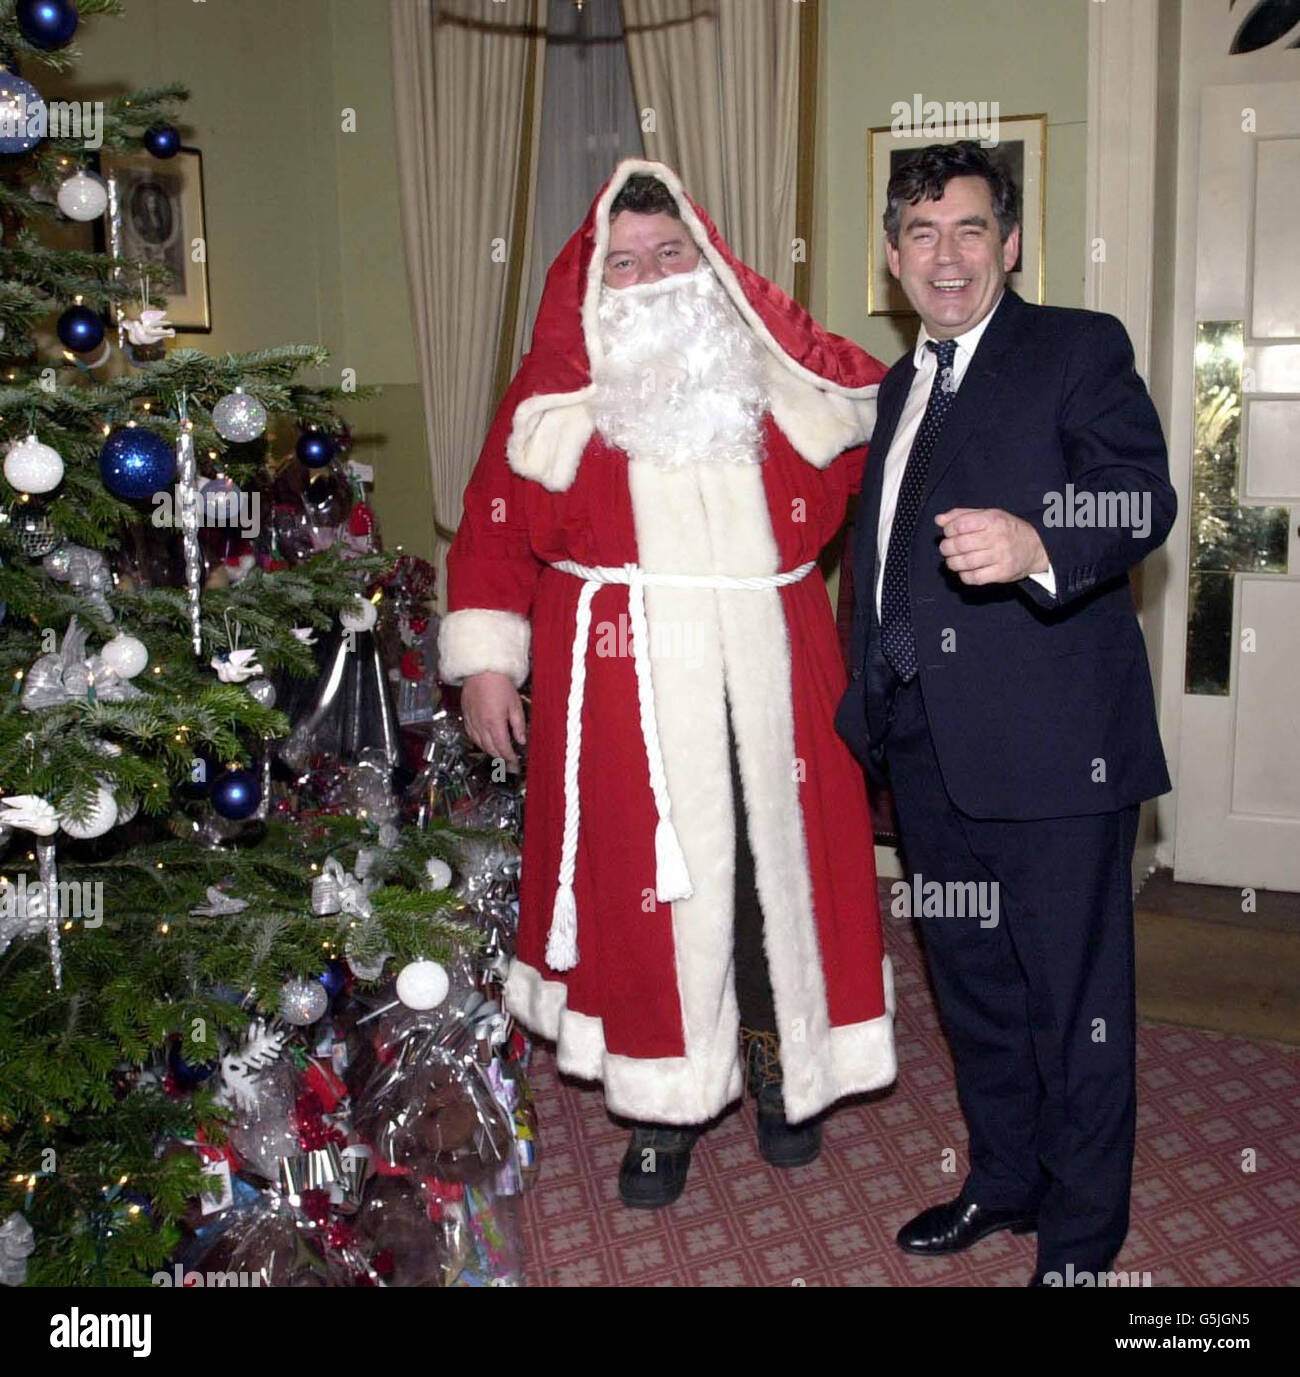 Der Kanzler Gordon Brown (rechts) posiert mit dem Schauspieler Robbie Coltrane als Weihnachtsmann auf einer Weihnachtsfeier in der Nr. 11 Downing Street, London. * der Kanzler verwandelte seine offizielle Residenz in eine festliche Grotte für seine jährliche Kinderweihnachtsfeier zu Ehren der Wohltätigkeitsorganisation Rainbow Trust, die die Familien von Kindern mit lebensbedrohlichen Krankheiten unterstützt. Zauberer, Jongleure und prominente Gäste - darunter die Comedienne Dawn French - unterhielten 50 Kinder und ihre Familien. Stockfoto